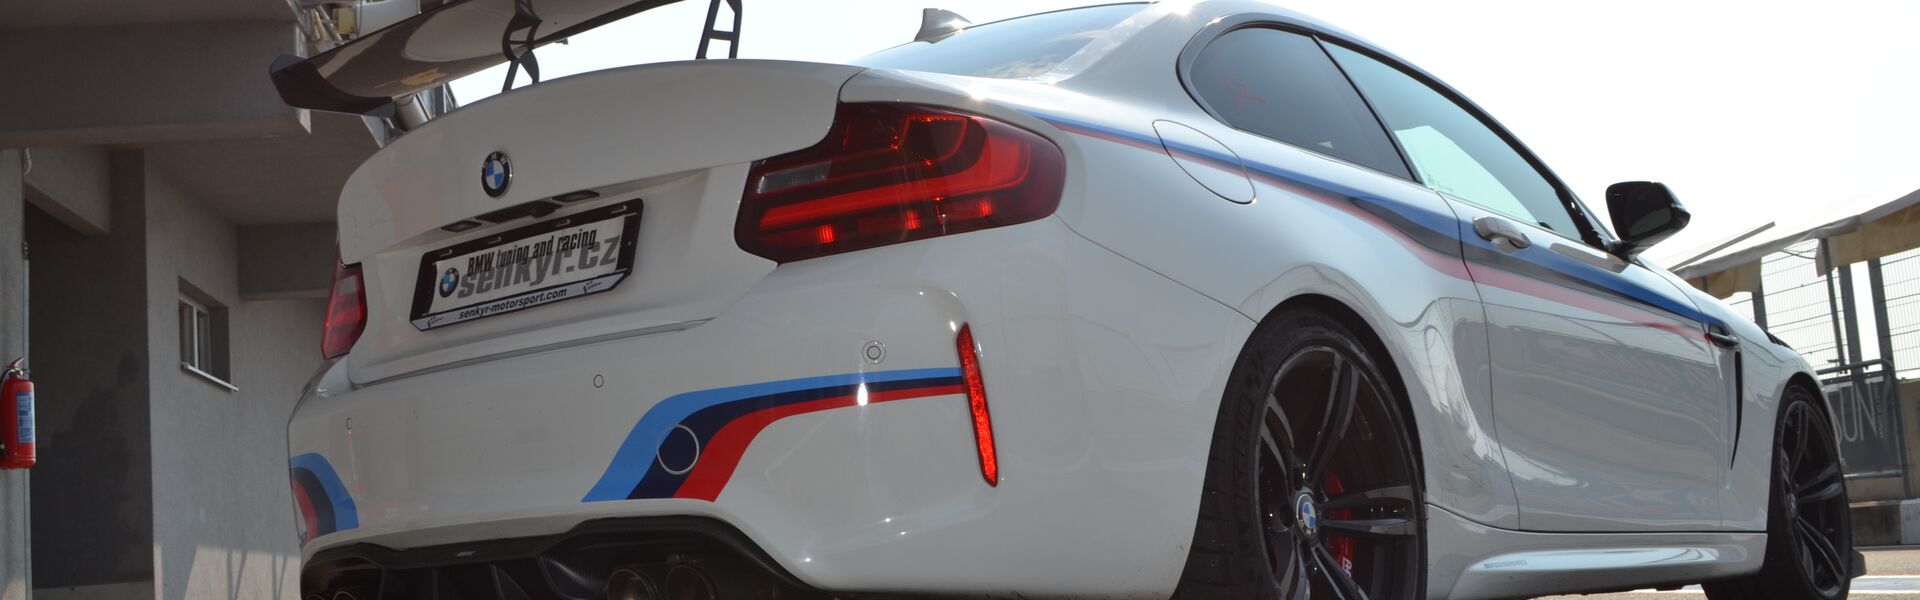 Bodykit/ Aerodynamic elements BMW Z3M